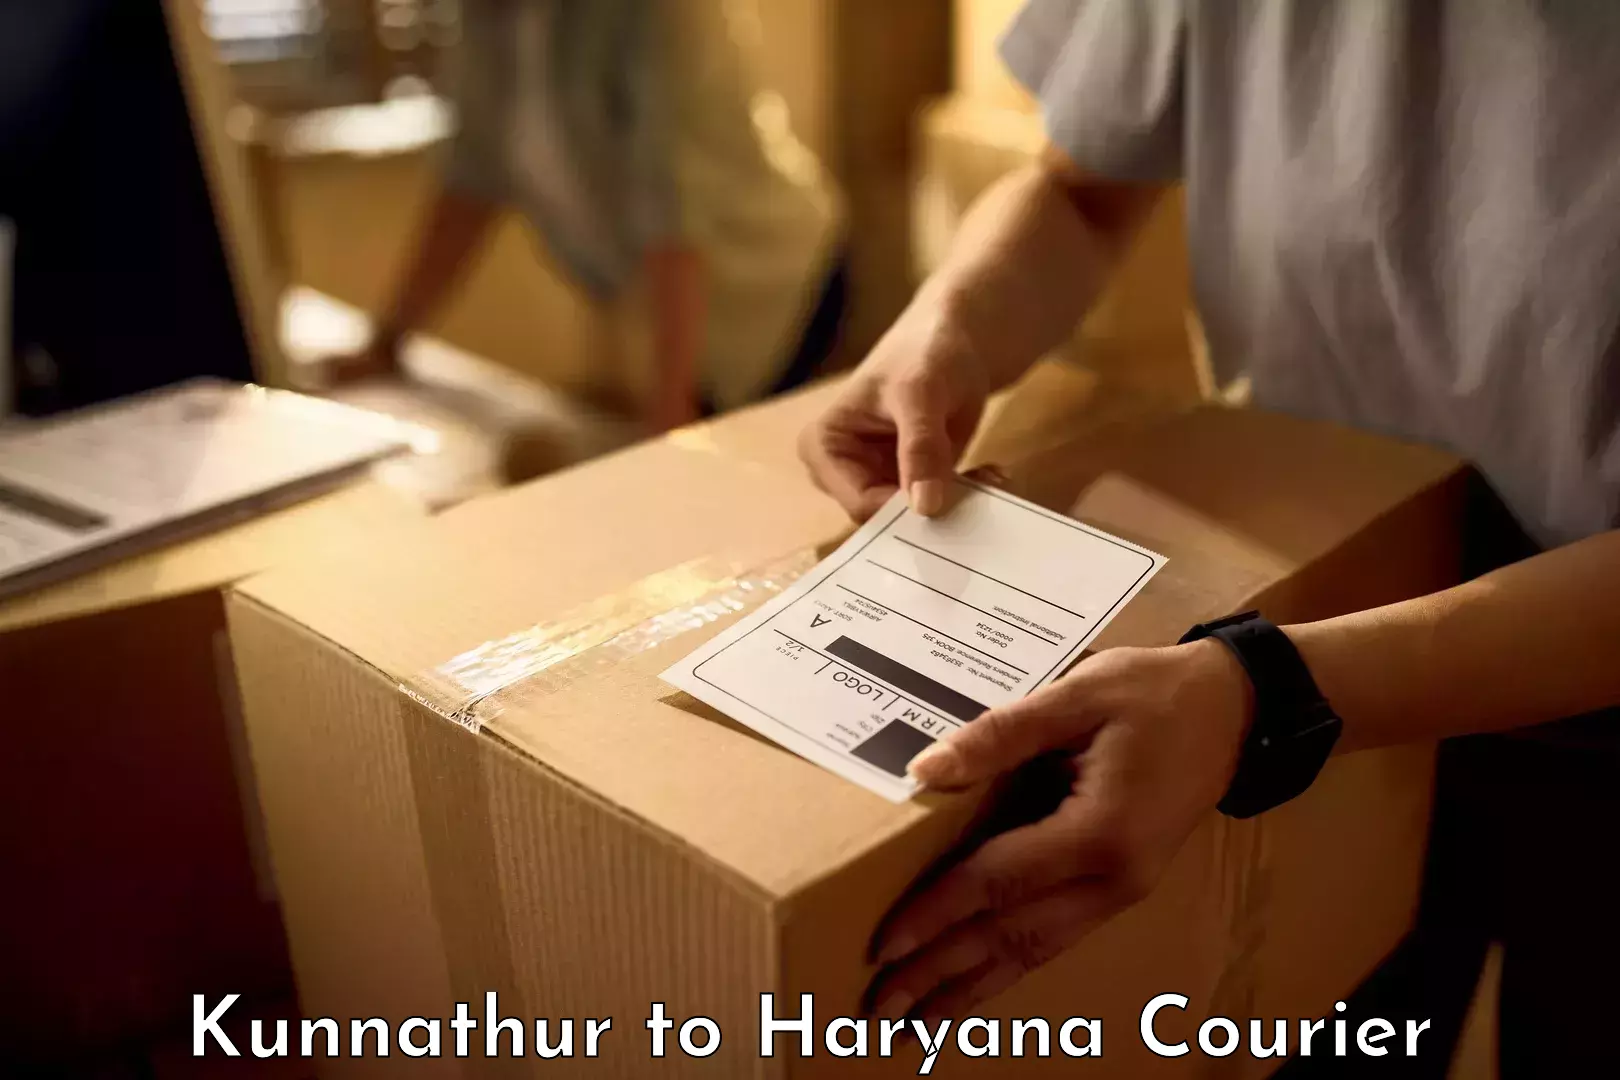 Baggage shipping experience Kunnathur to Chaudhary Charan Singh Haryana Agricultural University Hisar